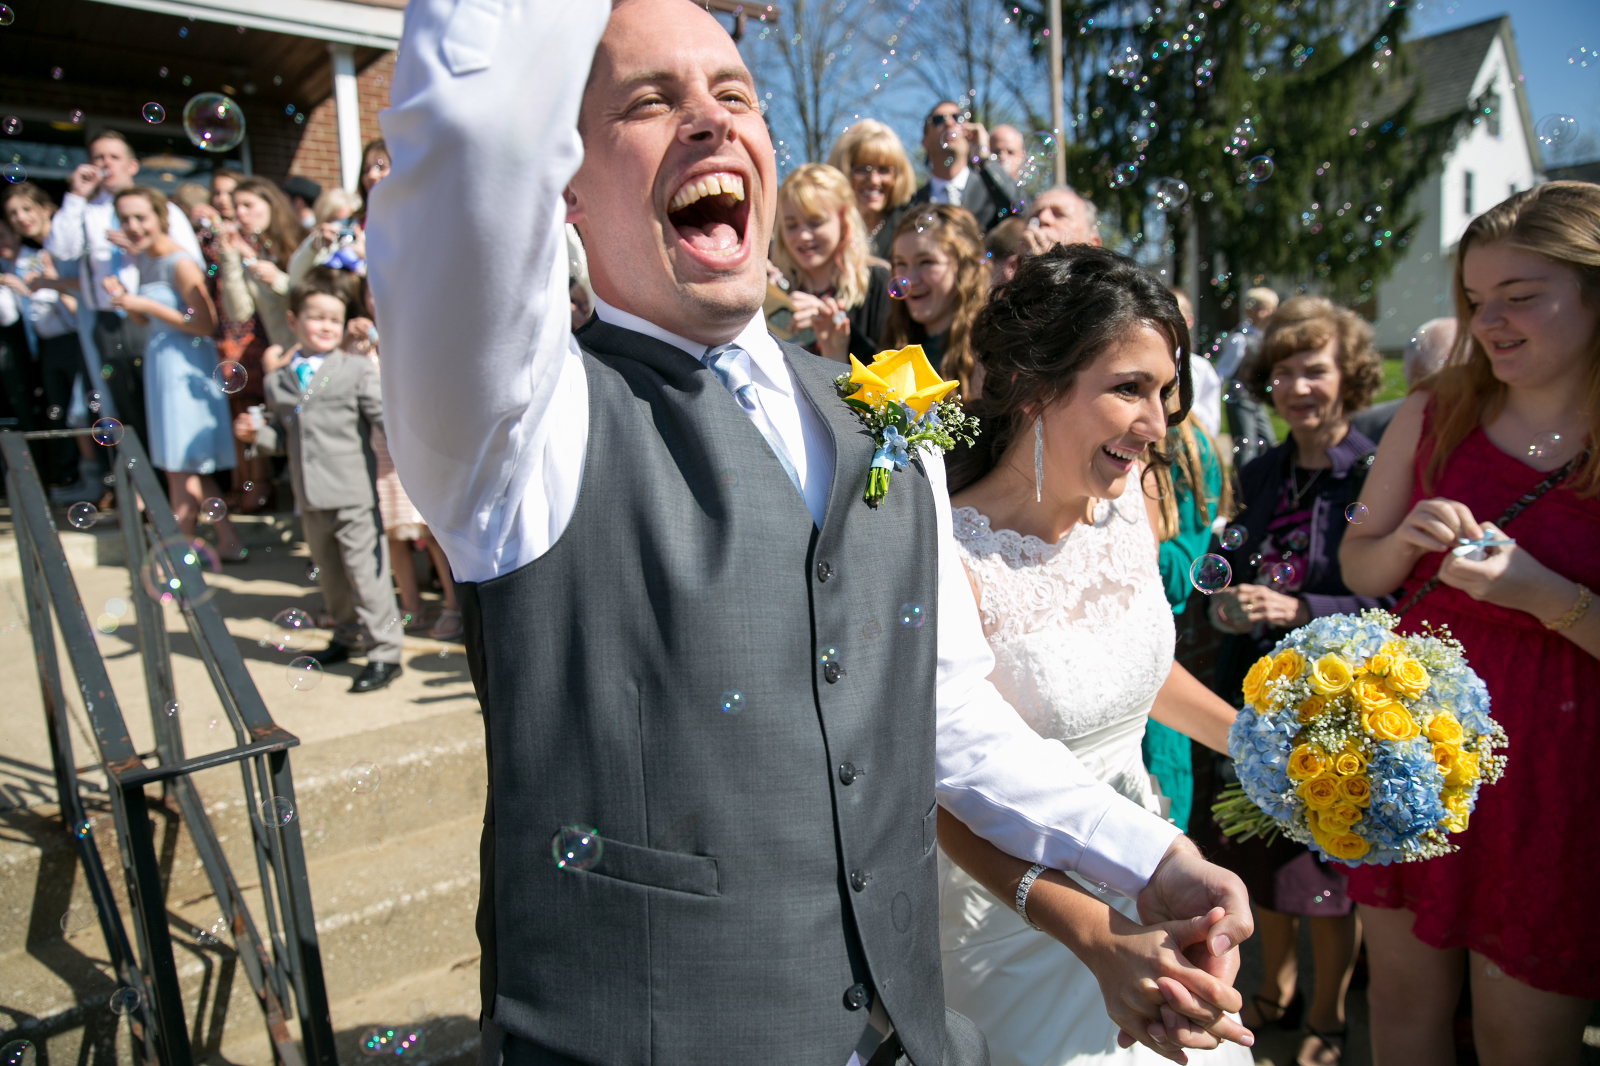 Ohio Wedding - Bubbles - Toledo Wedding - Just Married